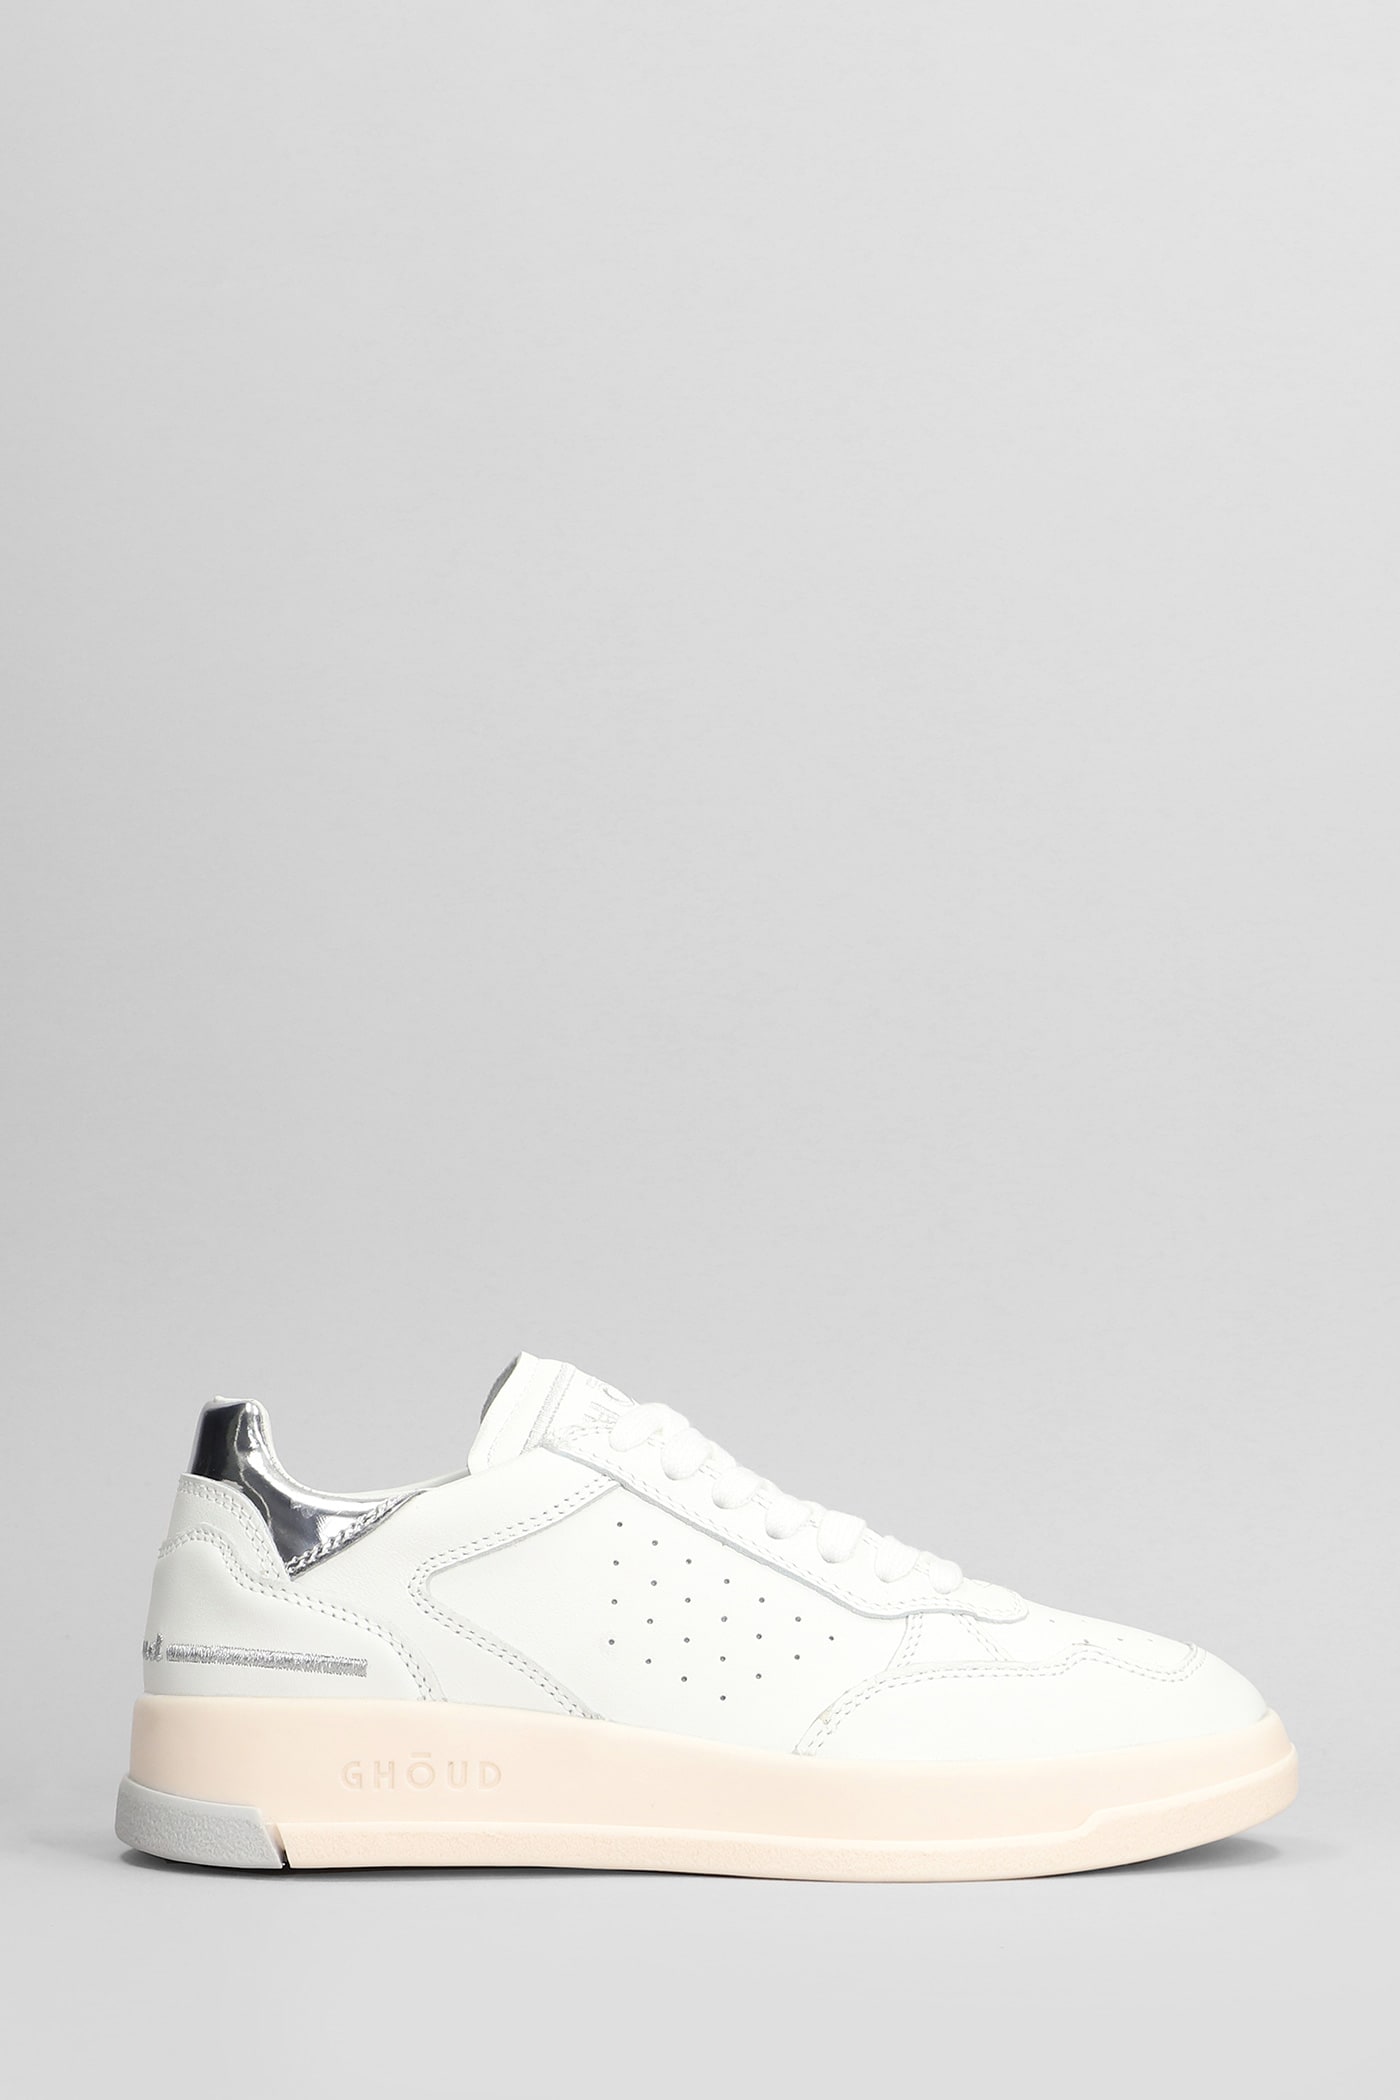 Tweener Low Sneakers In White Leather